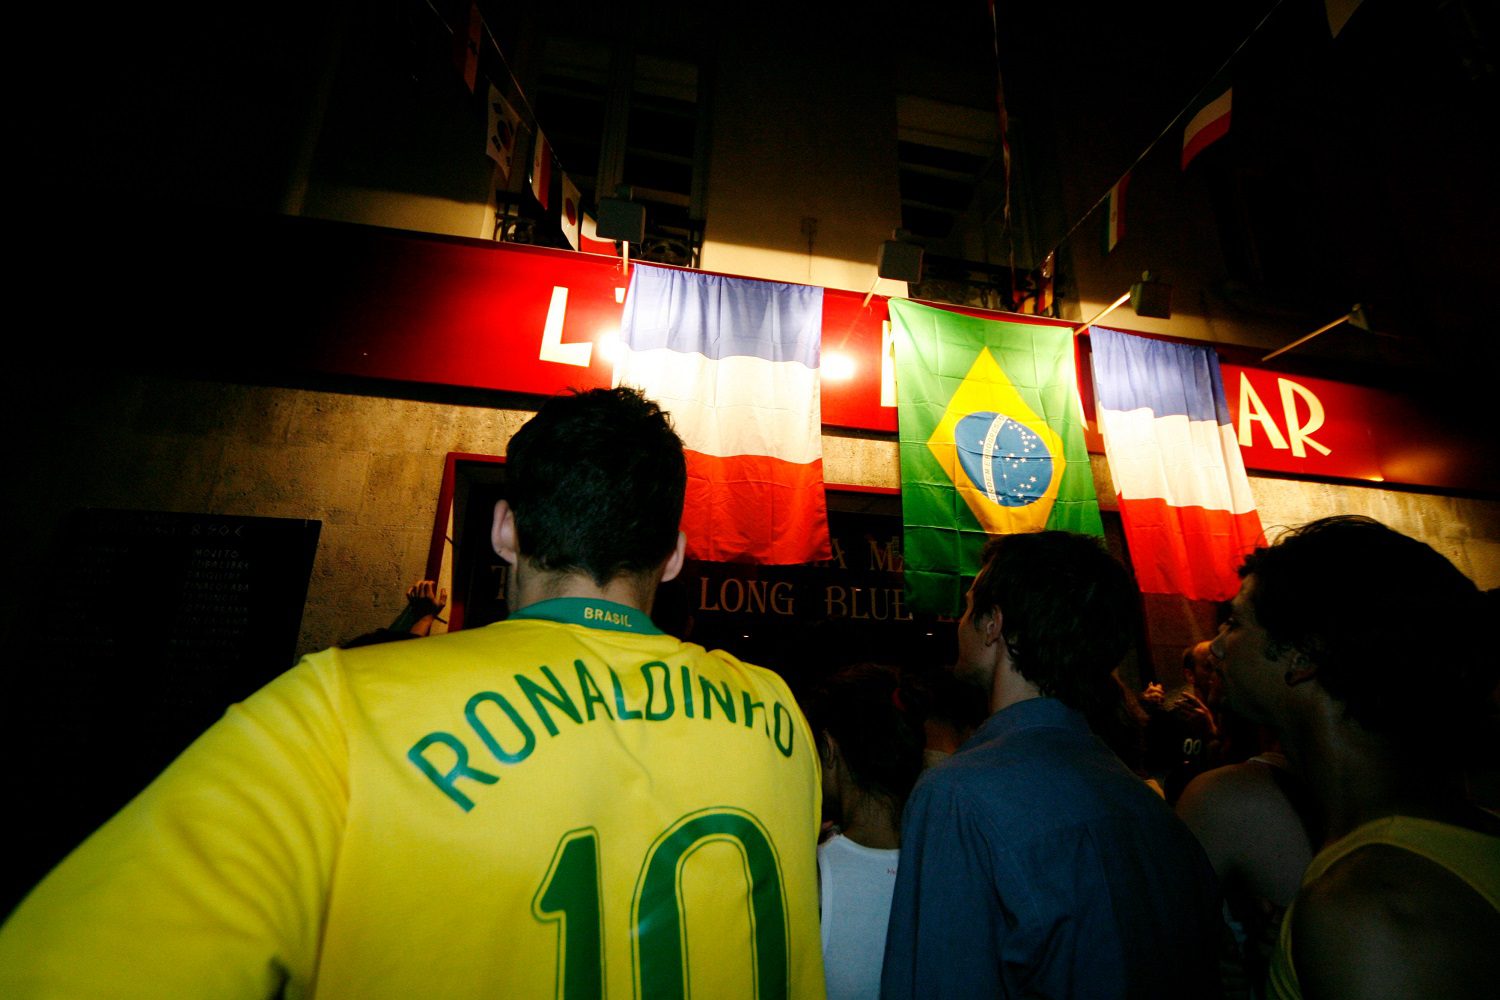 El fútbol (aficionados al fútbol) se reúne para ver un partido entre Brasil y Francia.  Uno lleva la equipación de la selección brasileña con el nombre Ronaldinho y el número 10 en la espalda.